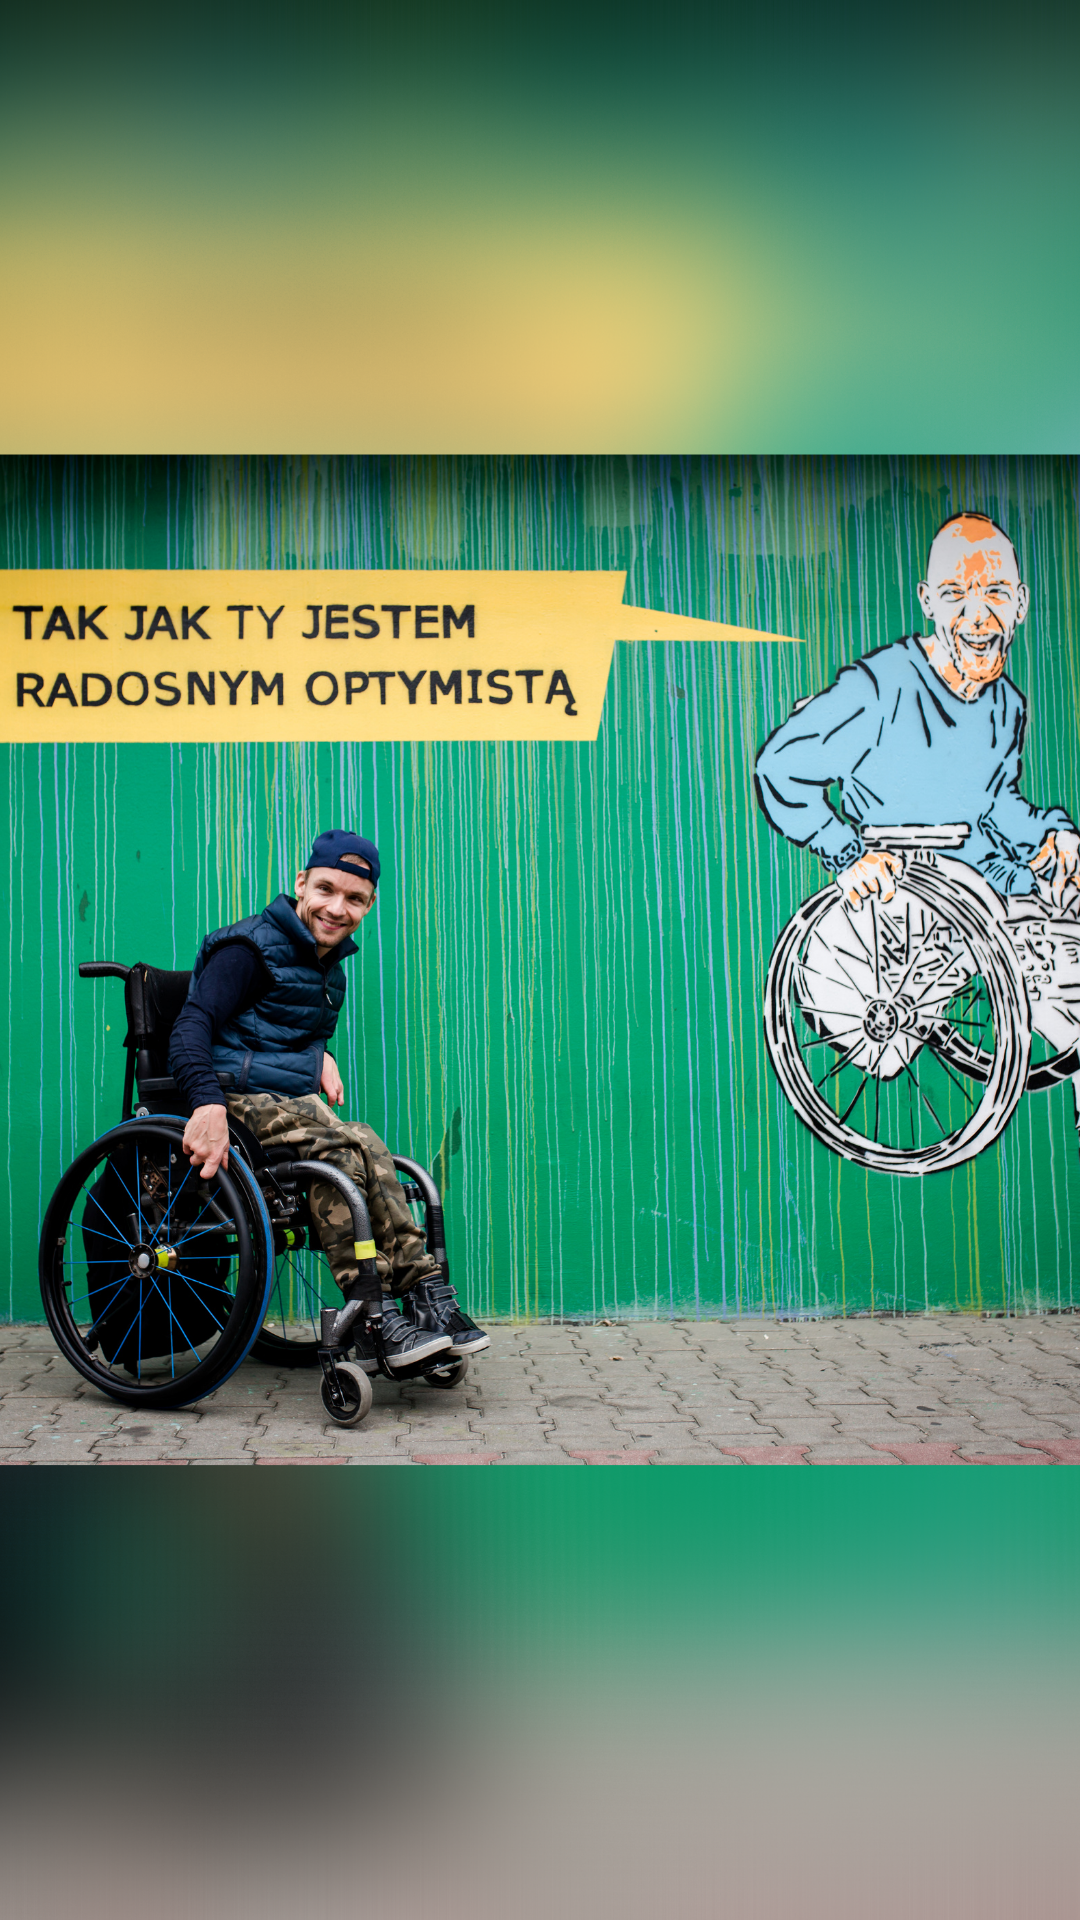 Podopieczny Fundacji pod swoim wizerunkiem na muralu Helpuj.pl